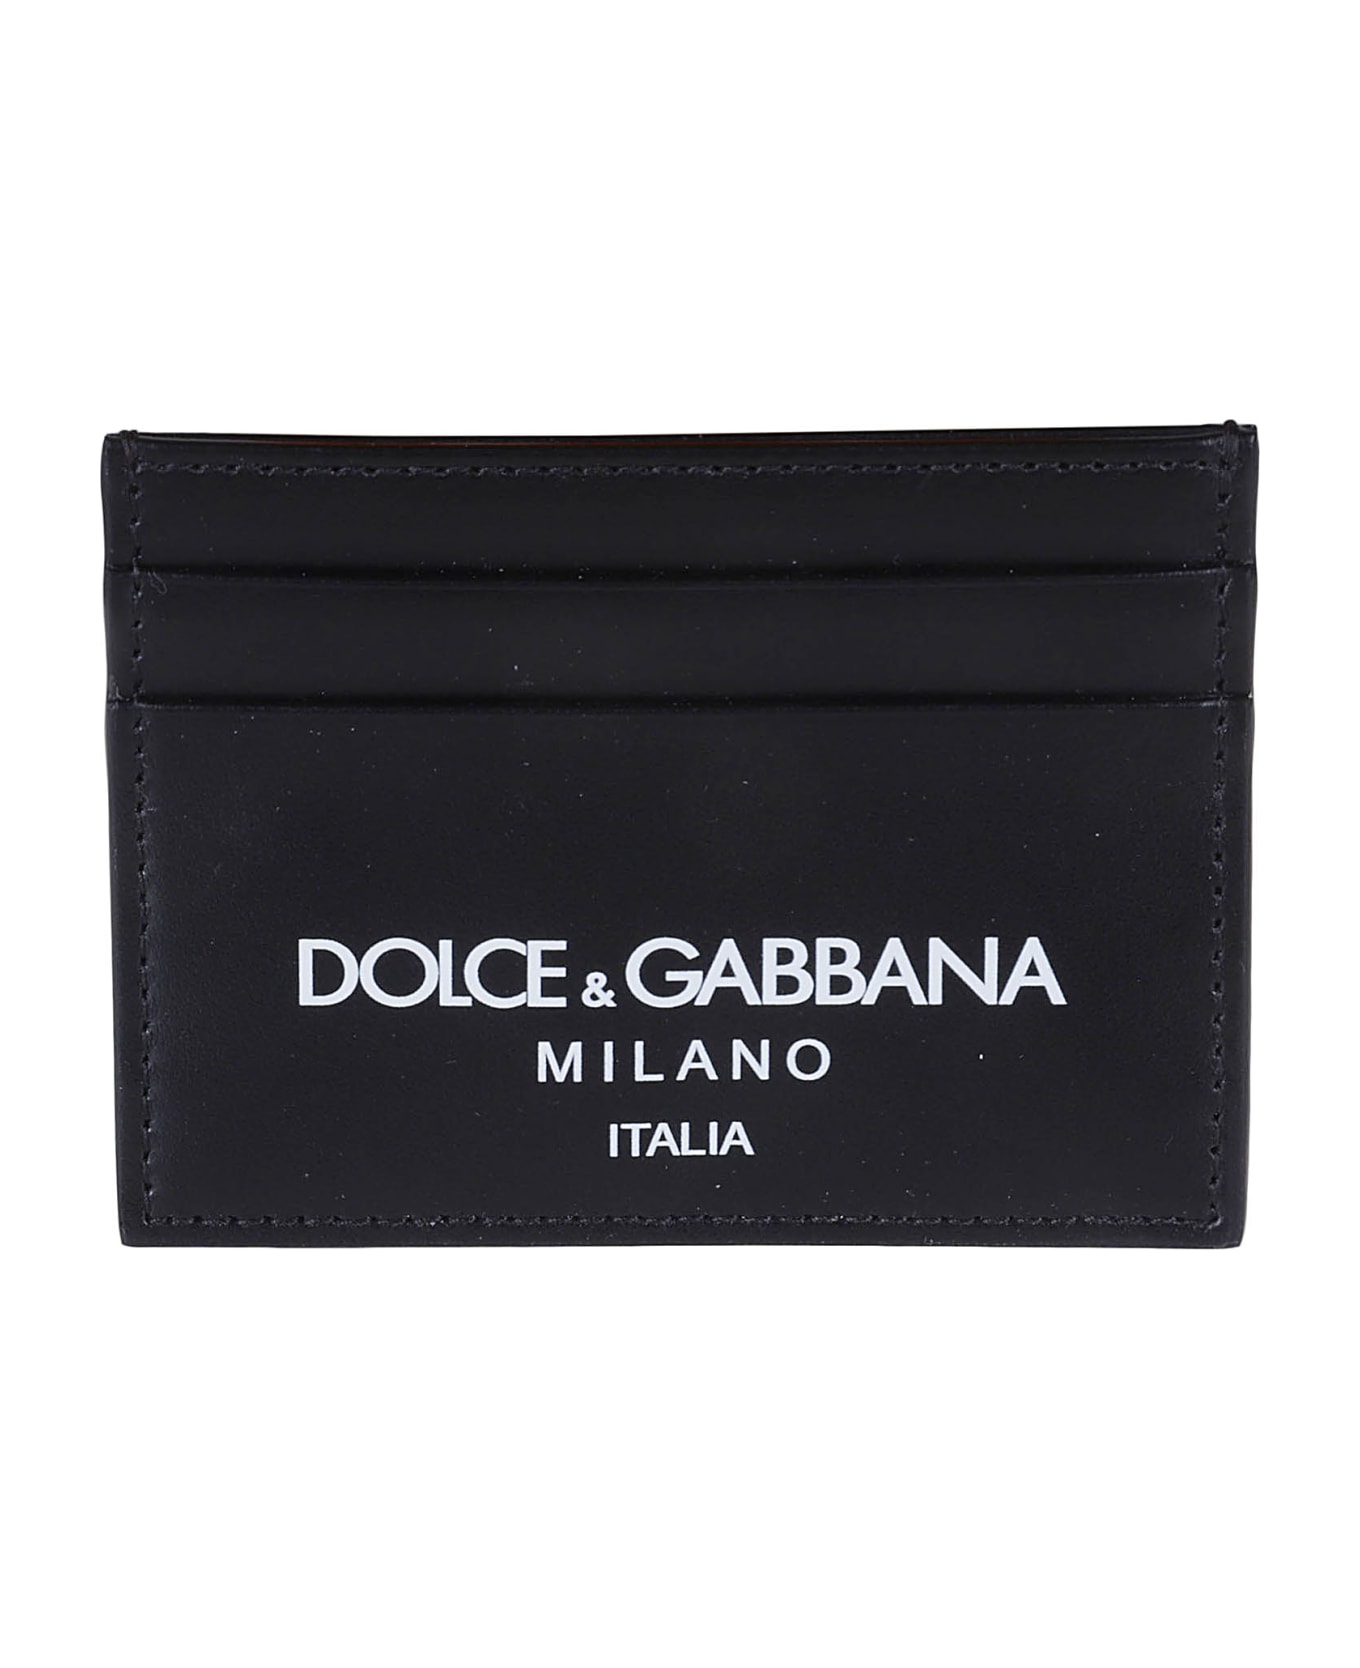 Dolce & Gabbana Milano Logo Card Holder - Black 財布